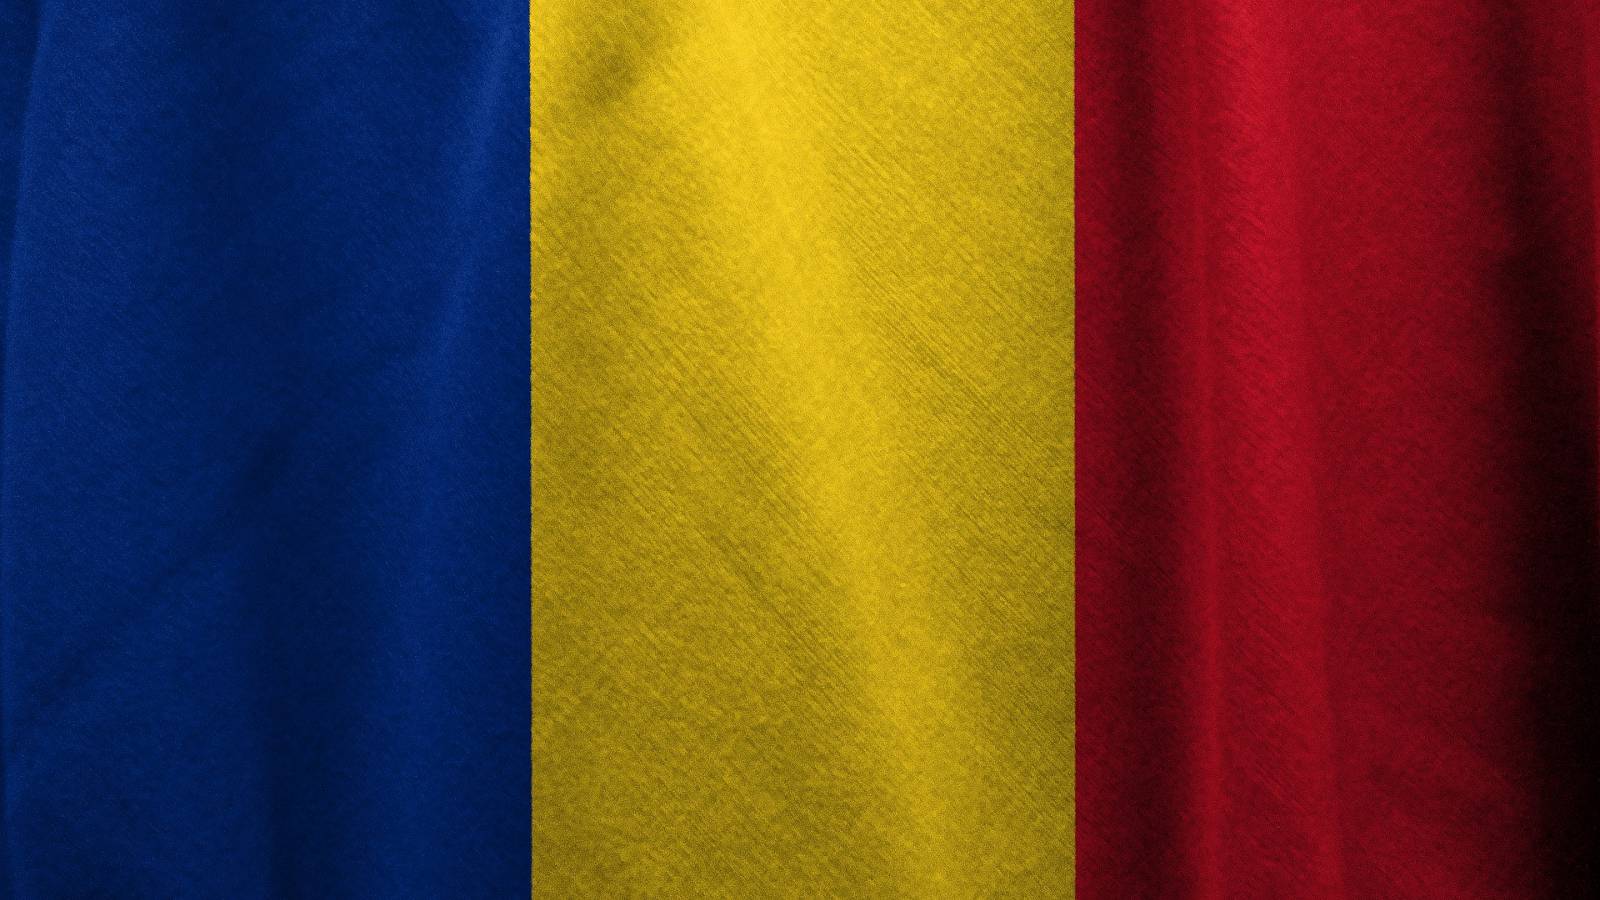 Uusien koronavirustapausten määrä vähenee edelleen Romaniassa 10